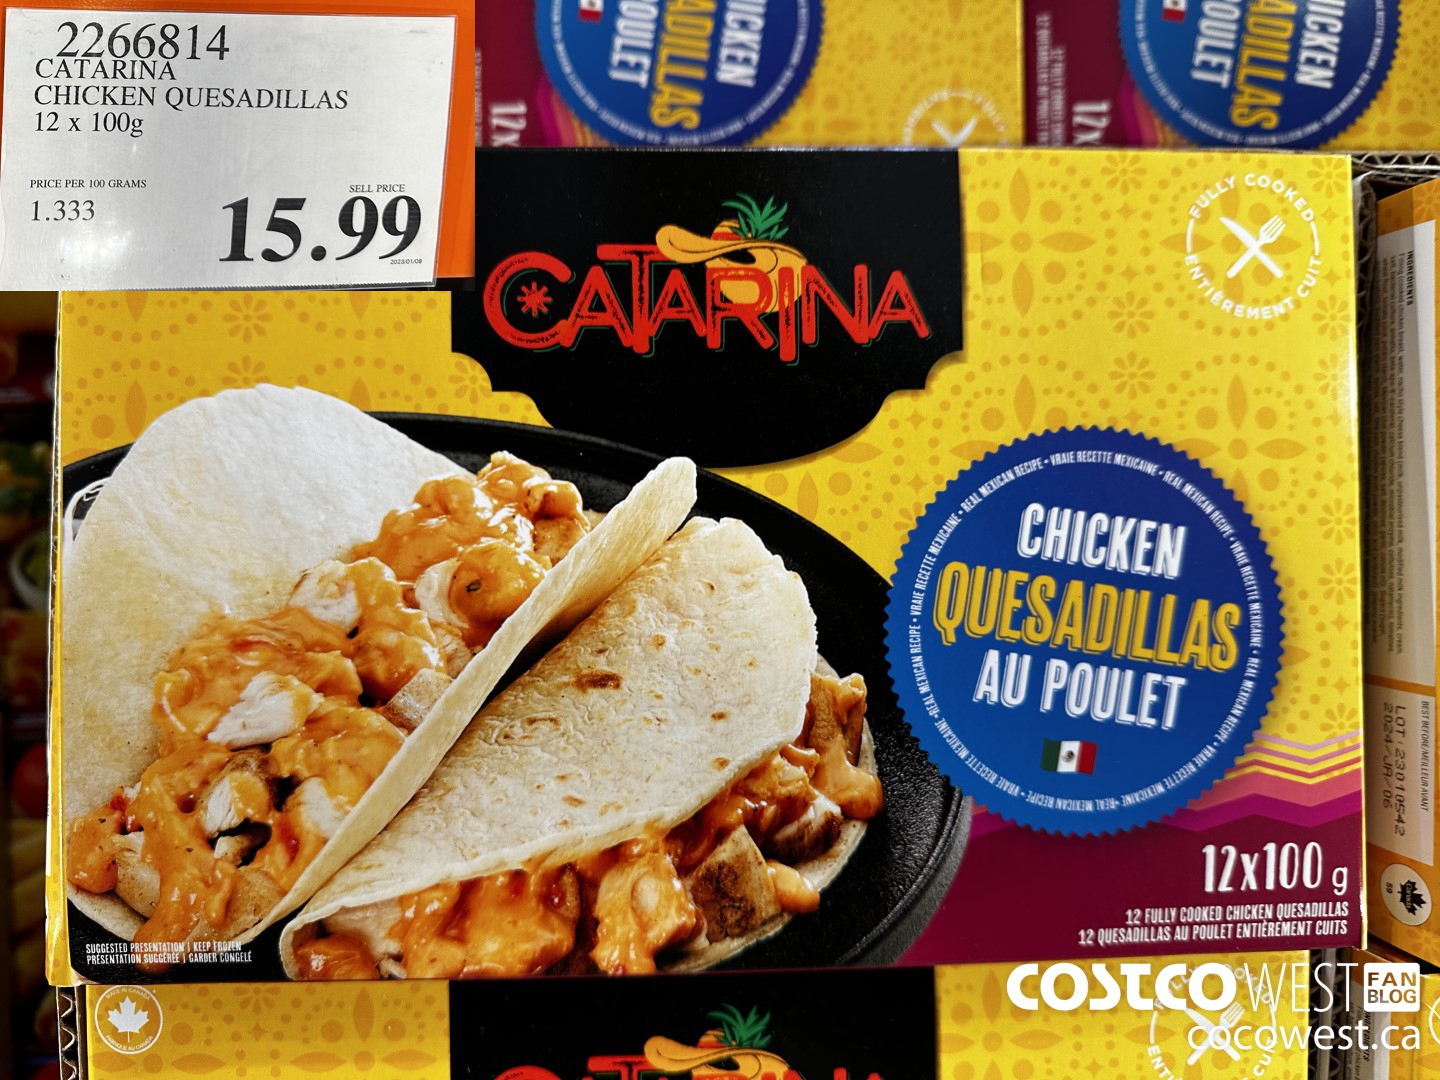 Costco Catarina Chicken Quesadillas Review - Costcuisine